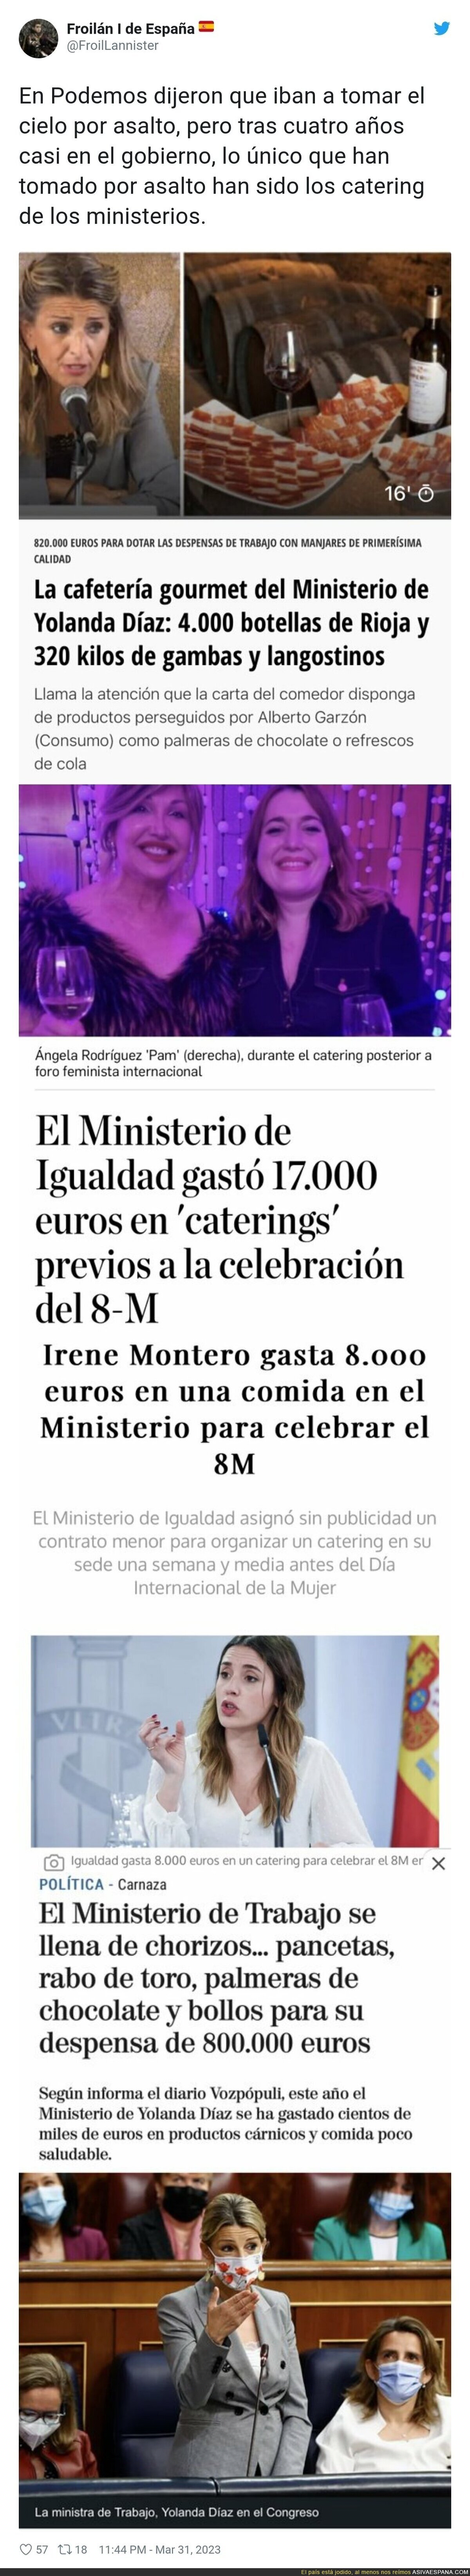 La buena vida de los Ministerios y el catering con Podemos en el Gobierno